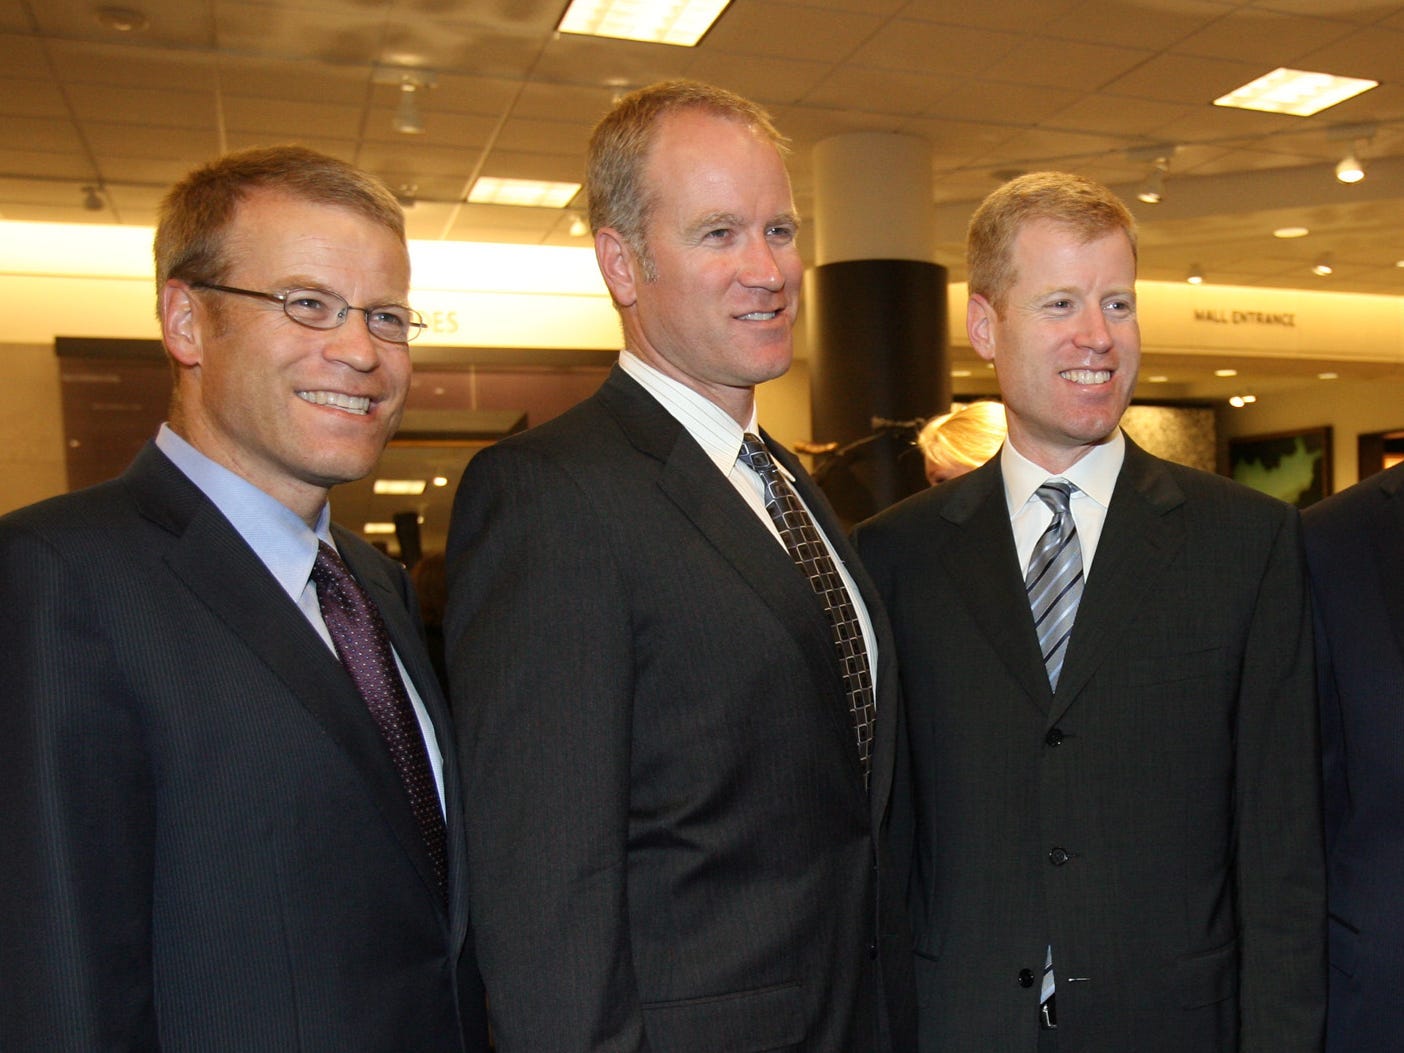 Blake, Pete, Erik und Jamie Nordstrom lächeln bei der Eröffnung des Nordstrom-Ladens in die Kamera